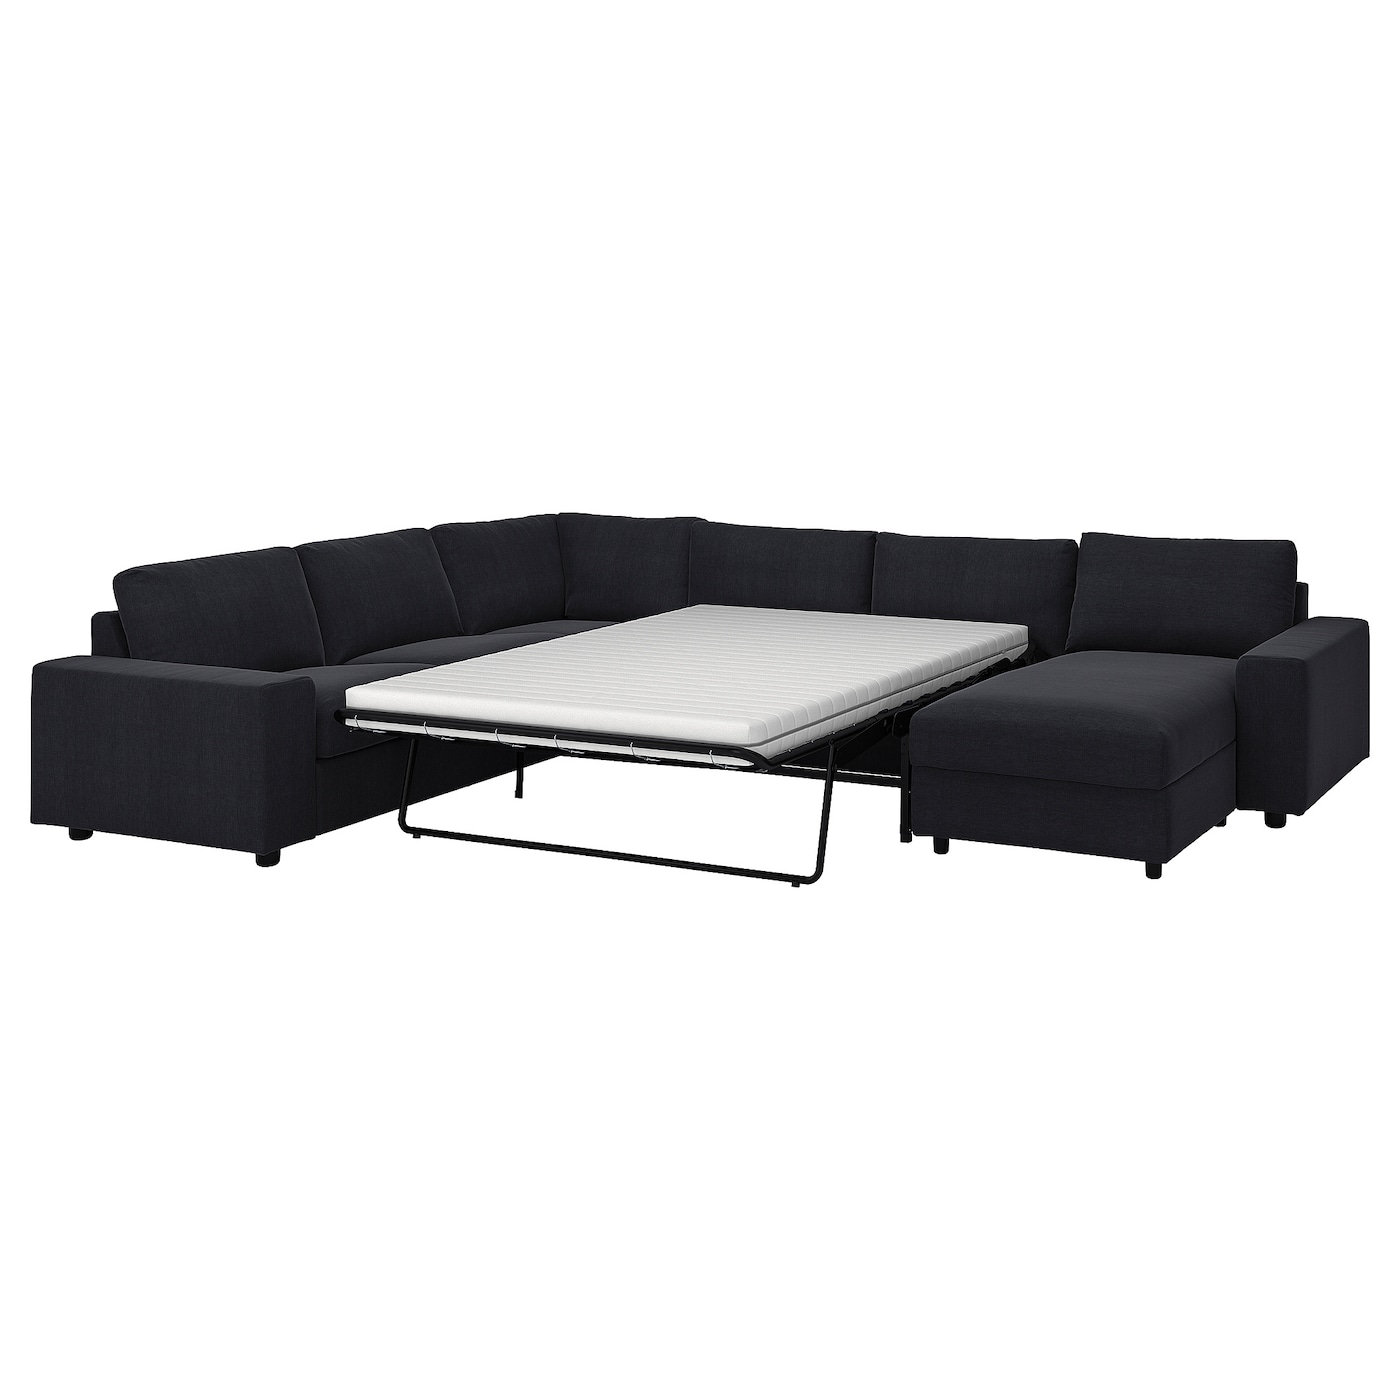 5-местный угловой диван со спальным местом - IKEA VIMLE/SAXEMARA, сине-черный, 256/356х164х83 см, 140х200 см, ВИМЛЕ ИКЕА